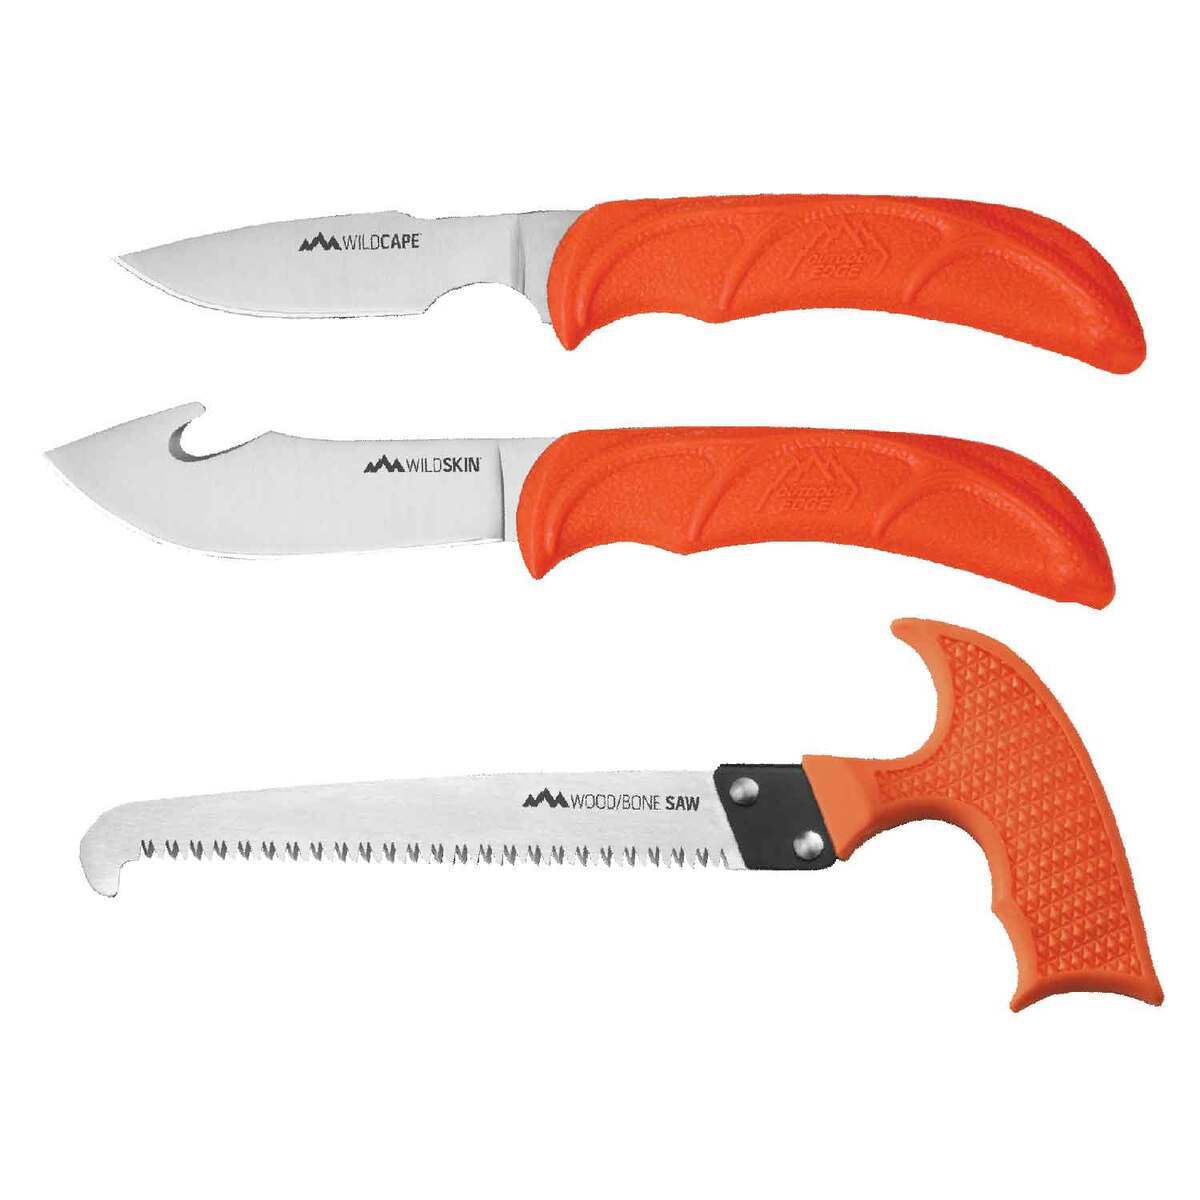 https://www.knives.com/medias/outdoor-edge-wildguide-knife-set-1530950-1.jpg?context=bWFzdGVyfGltYWdlc3w1MzAzNXxpbWFnZS9qcGVnfGhlZC9oYzYvMTA4MTQxOTkyNjczNTgvMTUzMDk1MC0xX2Jhc2UtY29udmVyc2lvbkZvcm1hdF8xMjAwLWNvbnZlcnNpb25Gb3JtYXR8YjZjY2IwNTc1NjU3ZDRjNTVjMjBhYTJjNDgwMTY1N2RkN2FkYjAxMjI0YTkyYzY1MDEzZDMxNjA2NzM1ODU4MA